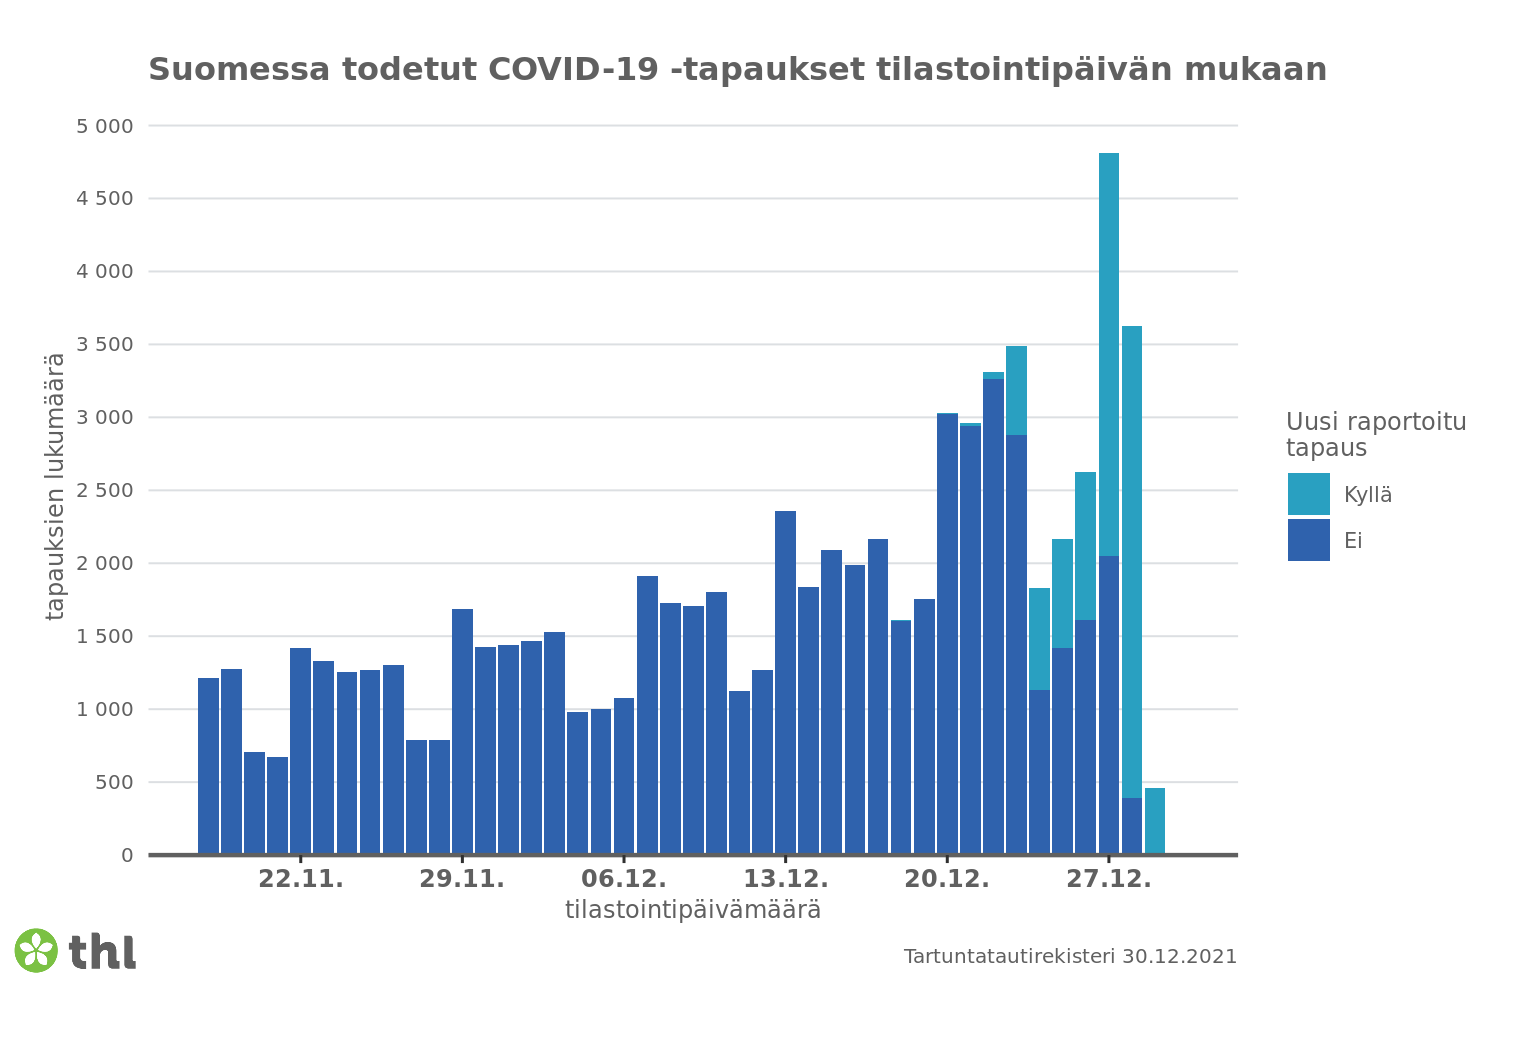 Pylväskuvaaja: uudet todetut koronavirustapaukset 30.12. Sisältö selitetty leipätekstissä.